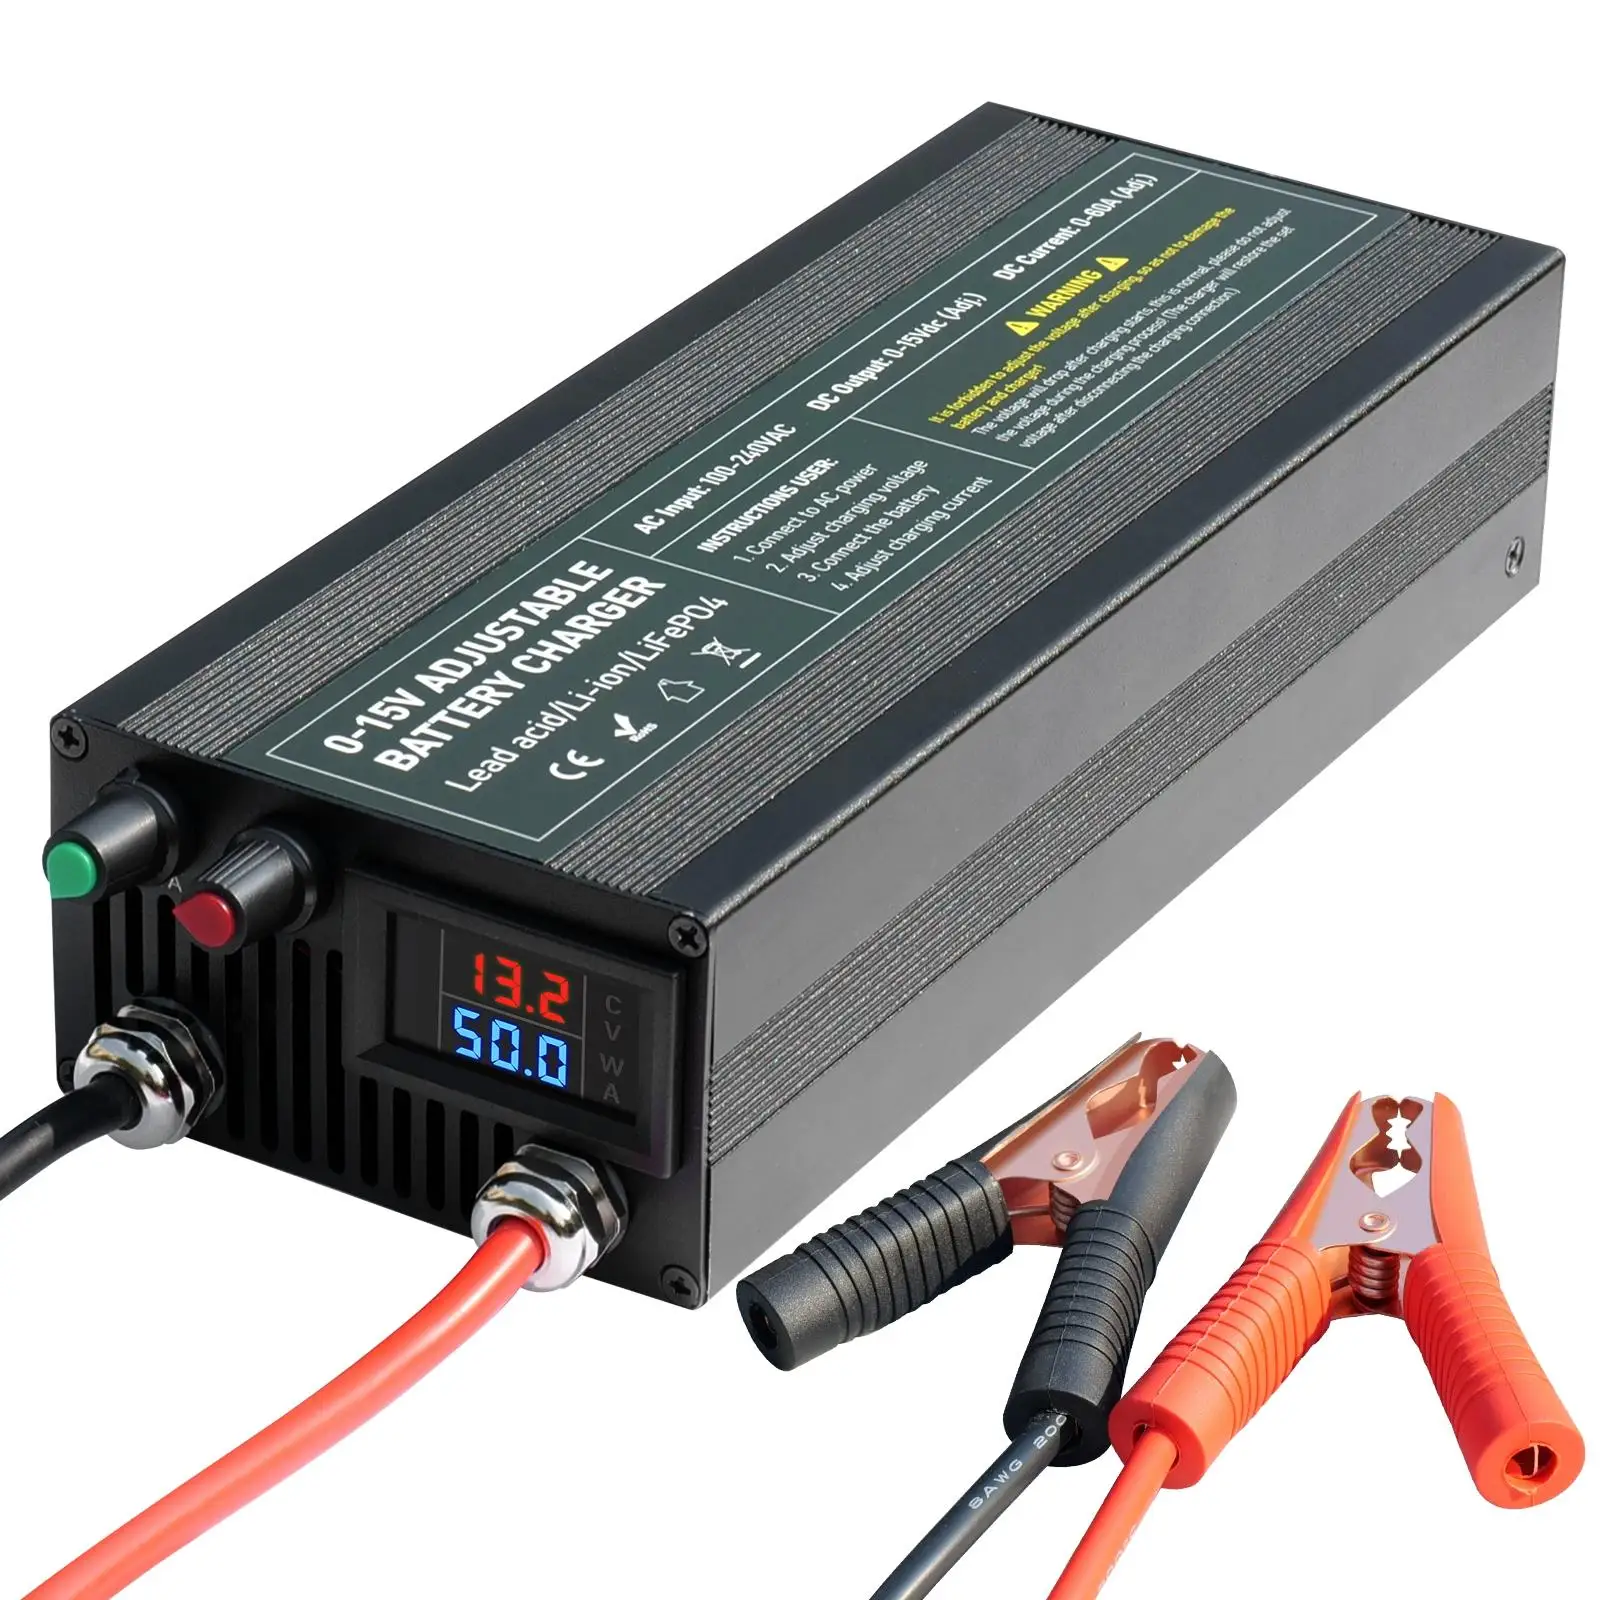 

0-15V 40A 60A 85A adjustable voltage current charger 12.6V 14.6V 13.8V li ion lifepo4 lead acid battery charger